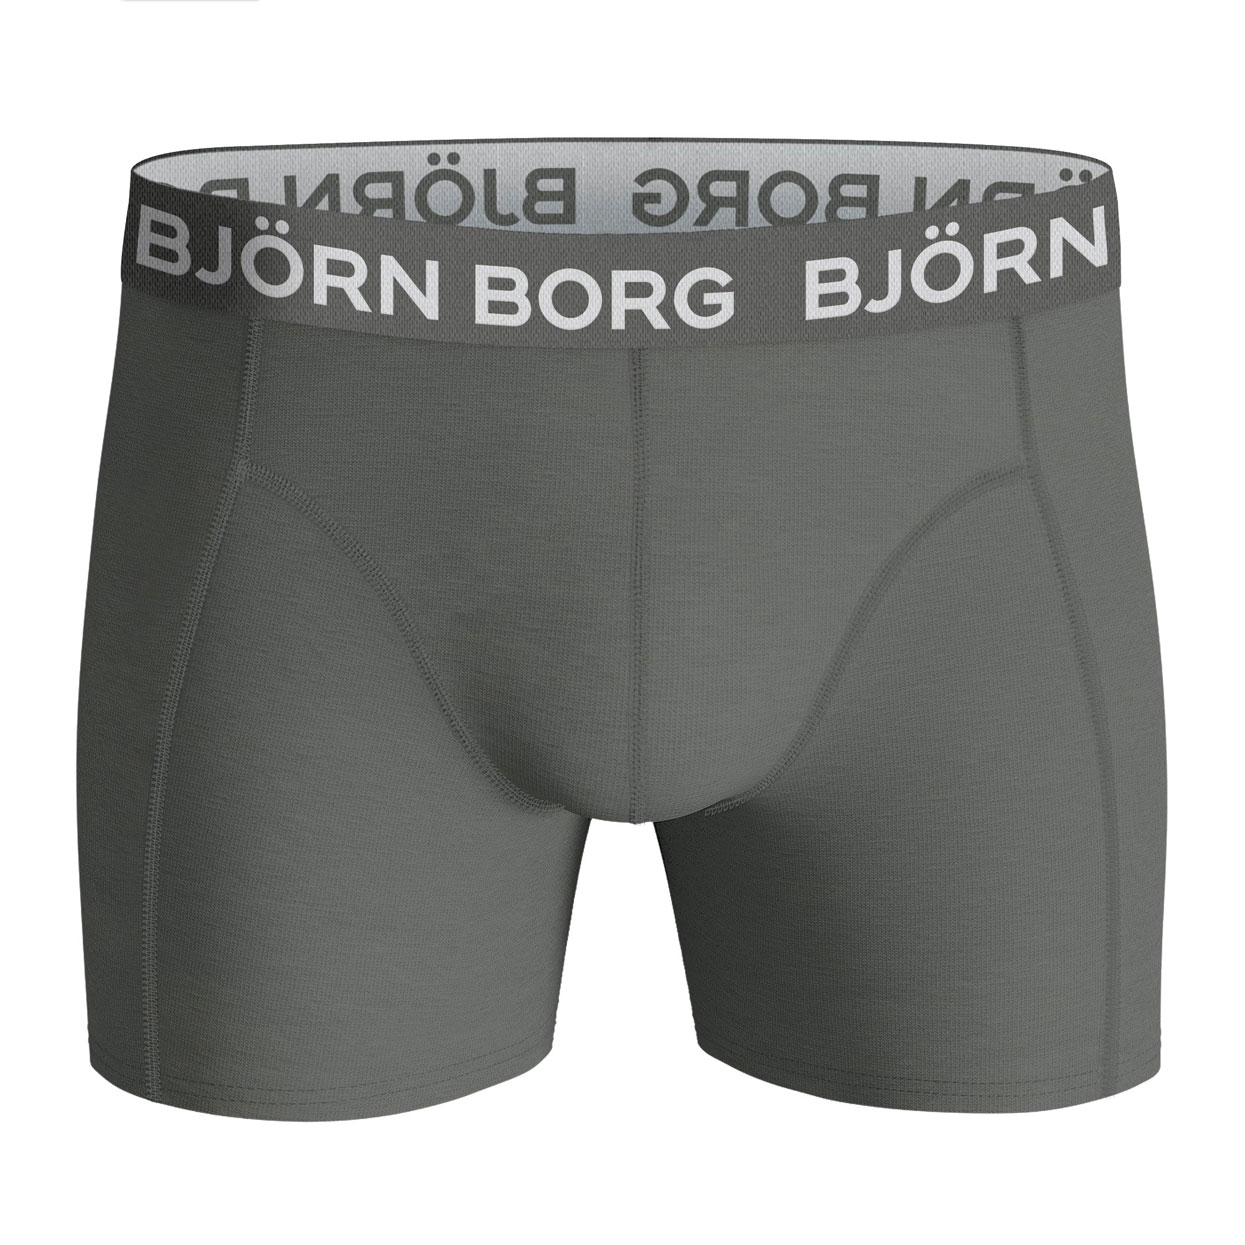 Bjorn-Borg-10002104-mp002-grey